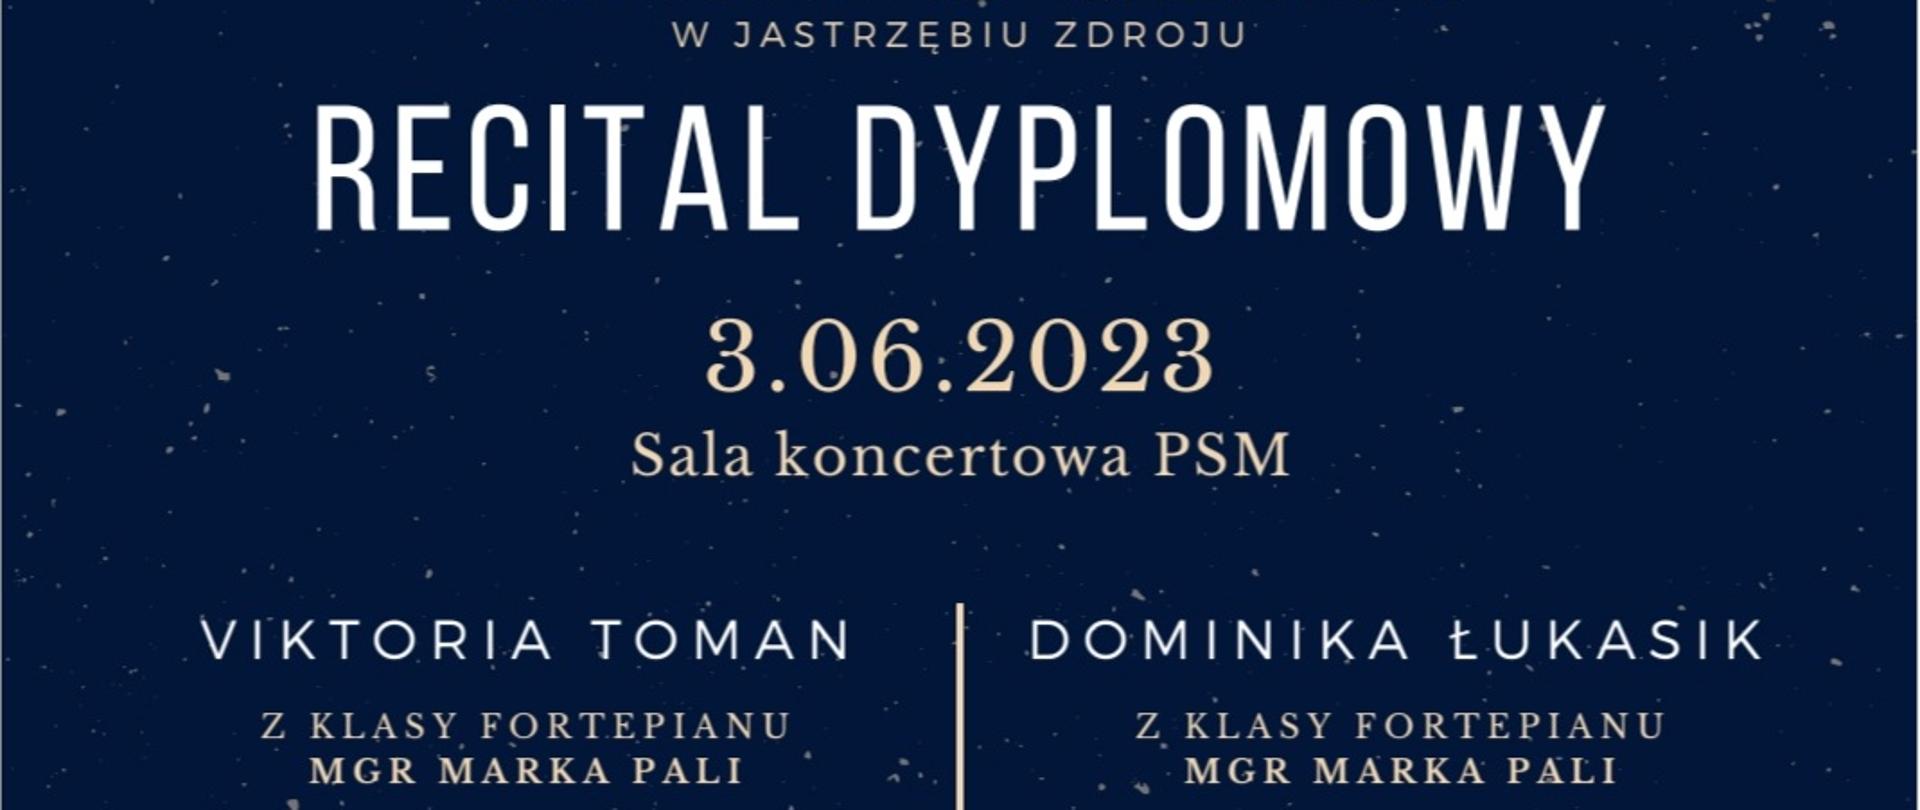 Plakat dotyczący Recitalu Dyplomowego Viktorii Toman oraz Dominiki Łukasik, odbywający się w dniu 03.06.2023 r. o godz. 11.00 oraz 12.00.